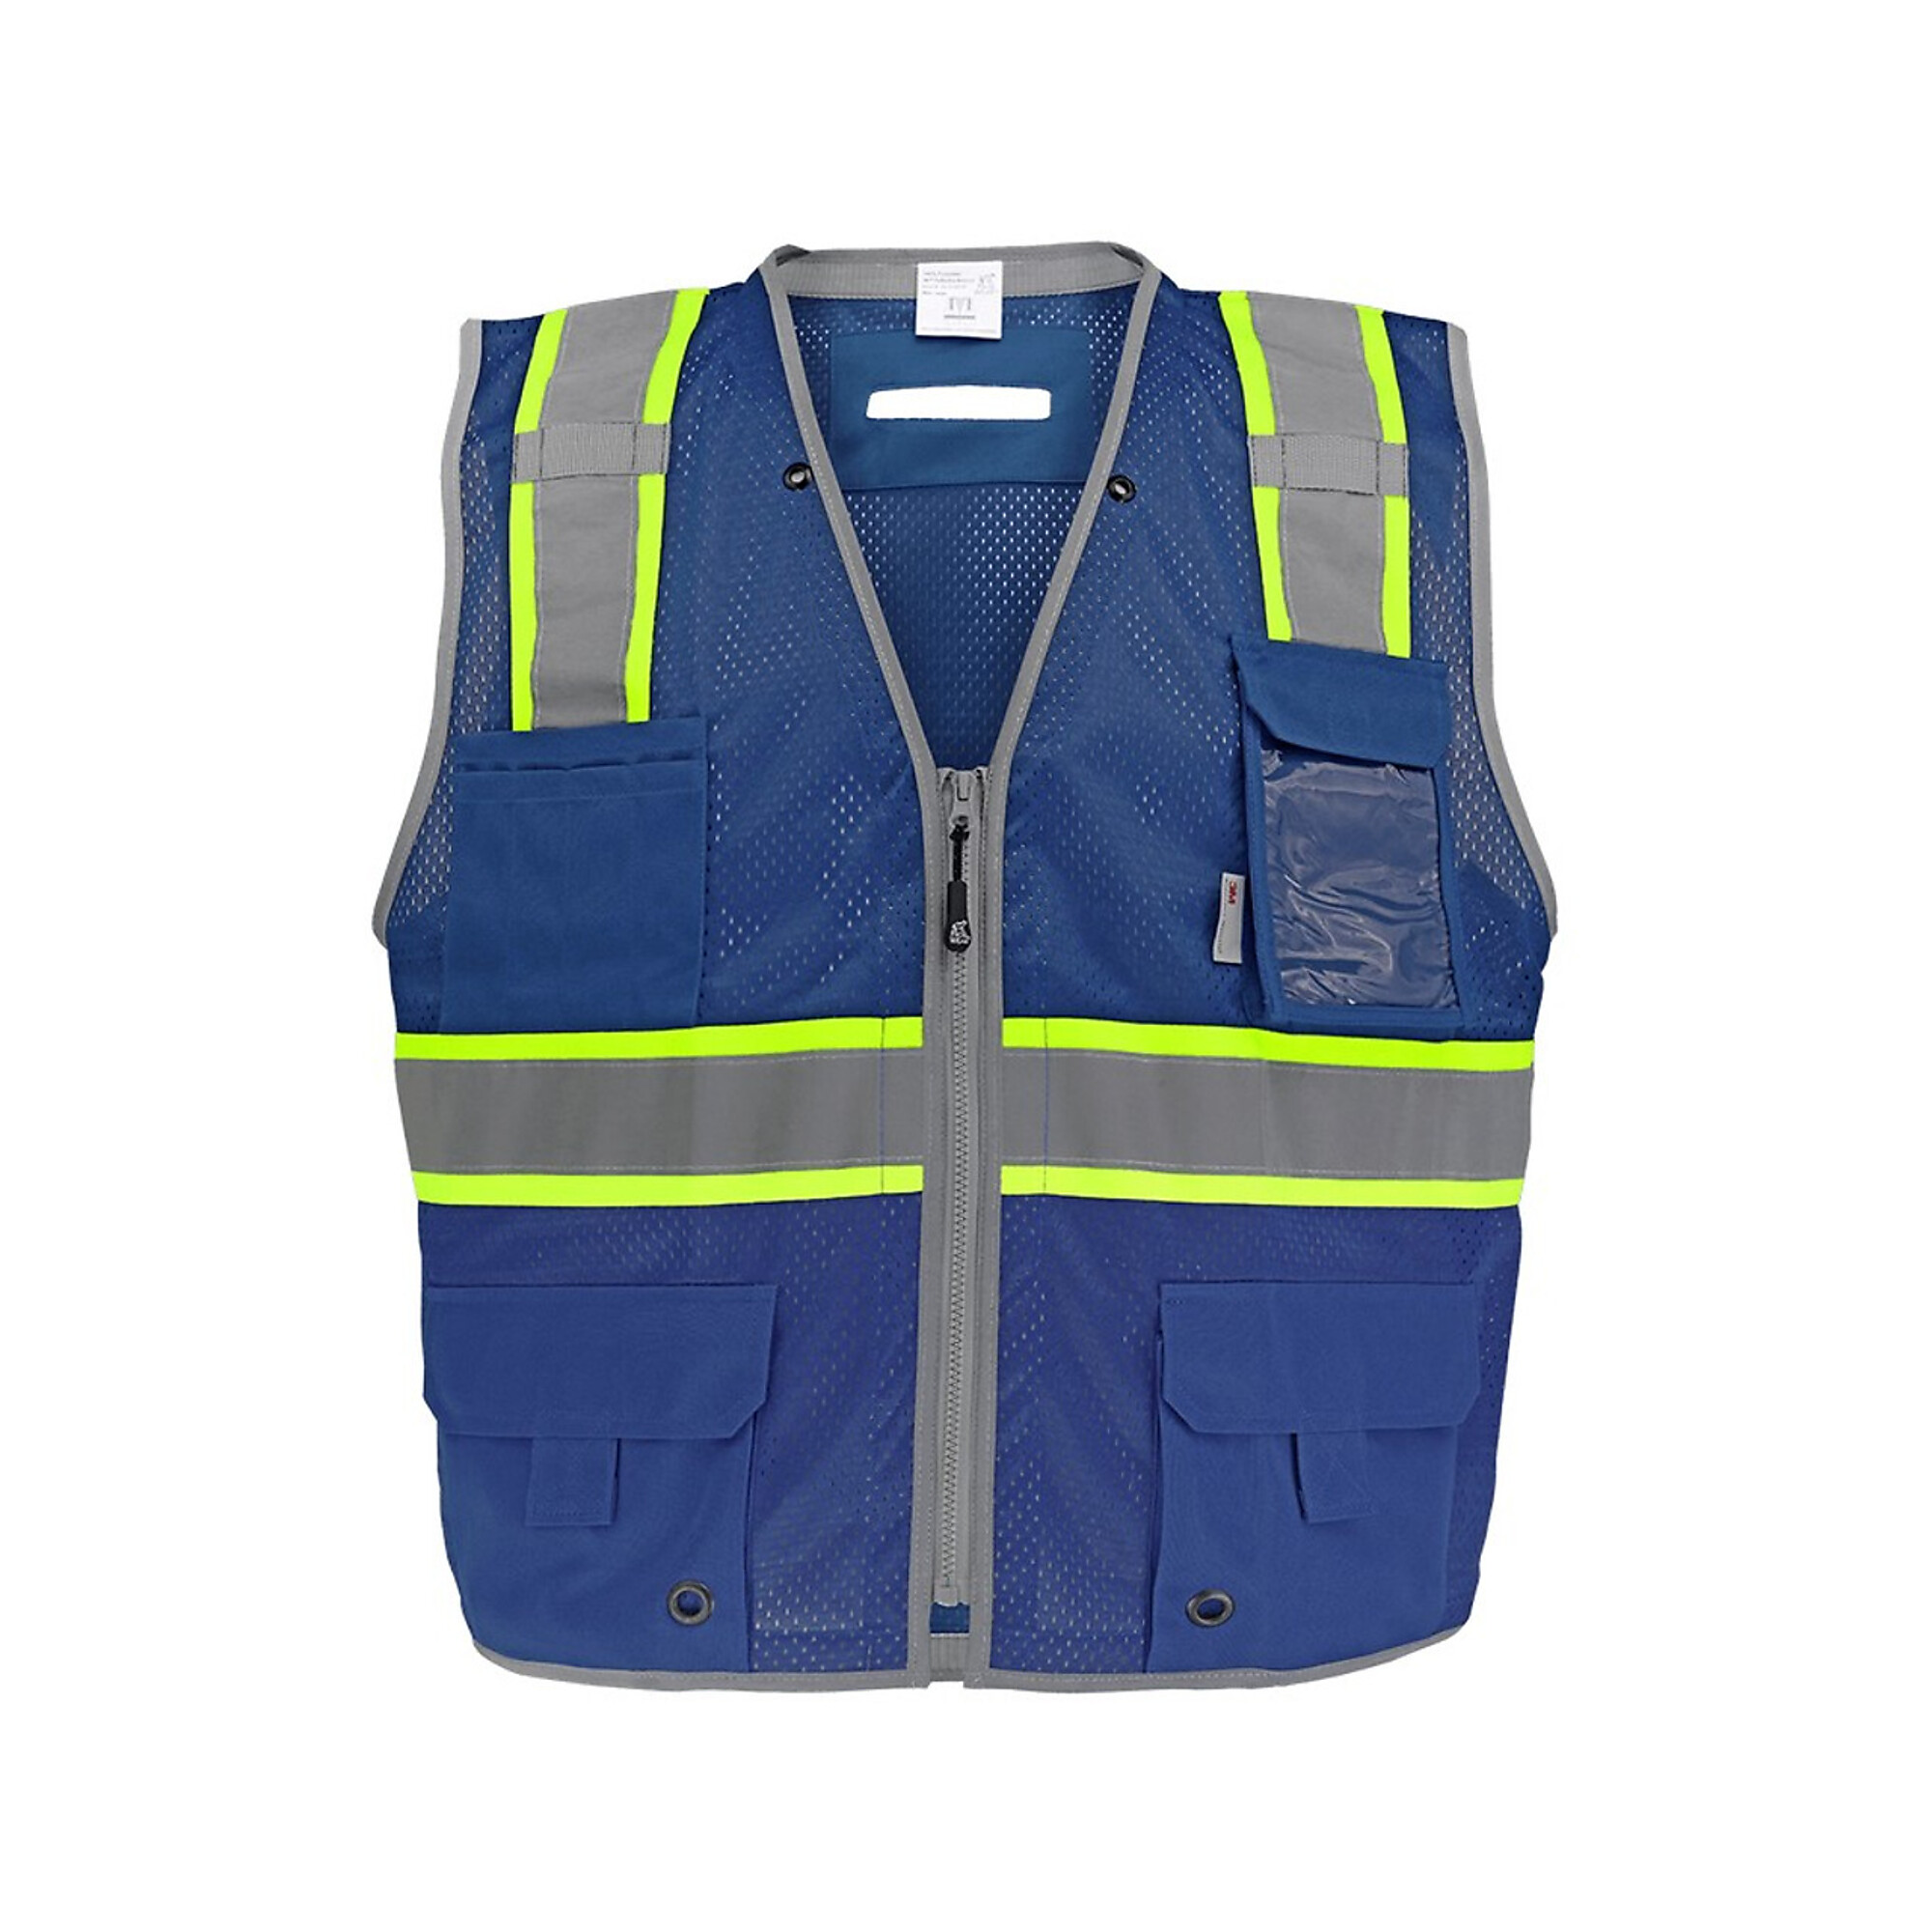 FrogWear Surveyors Vest, XL, Blue w/ Reflector, Model GLO-067B-XL